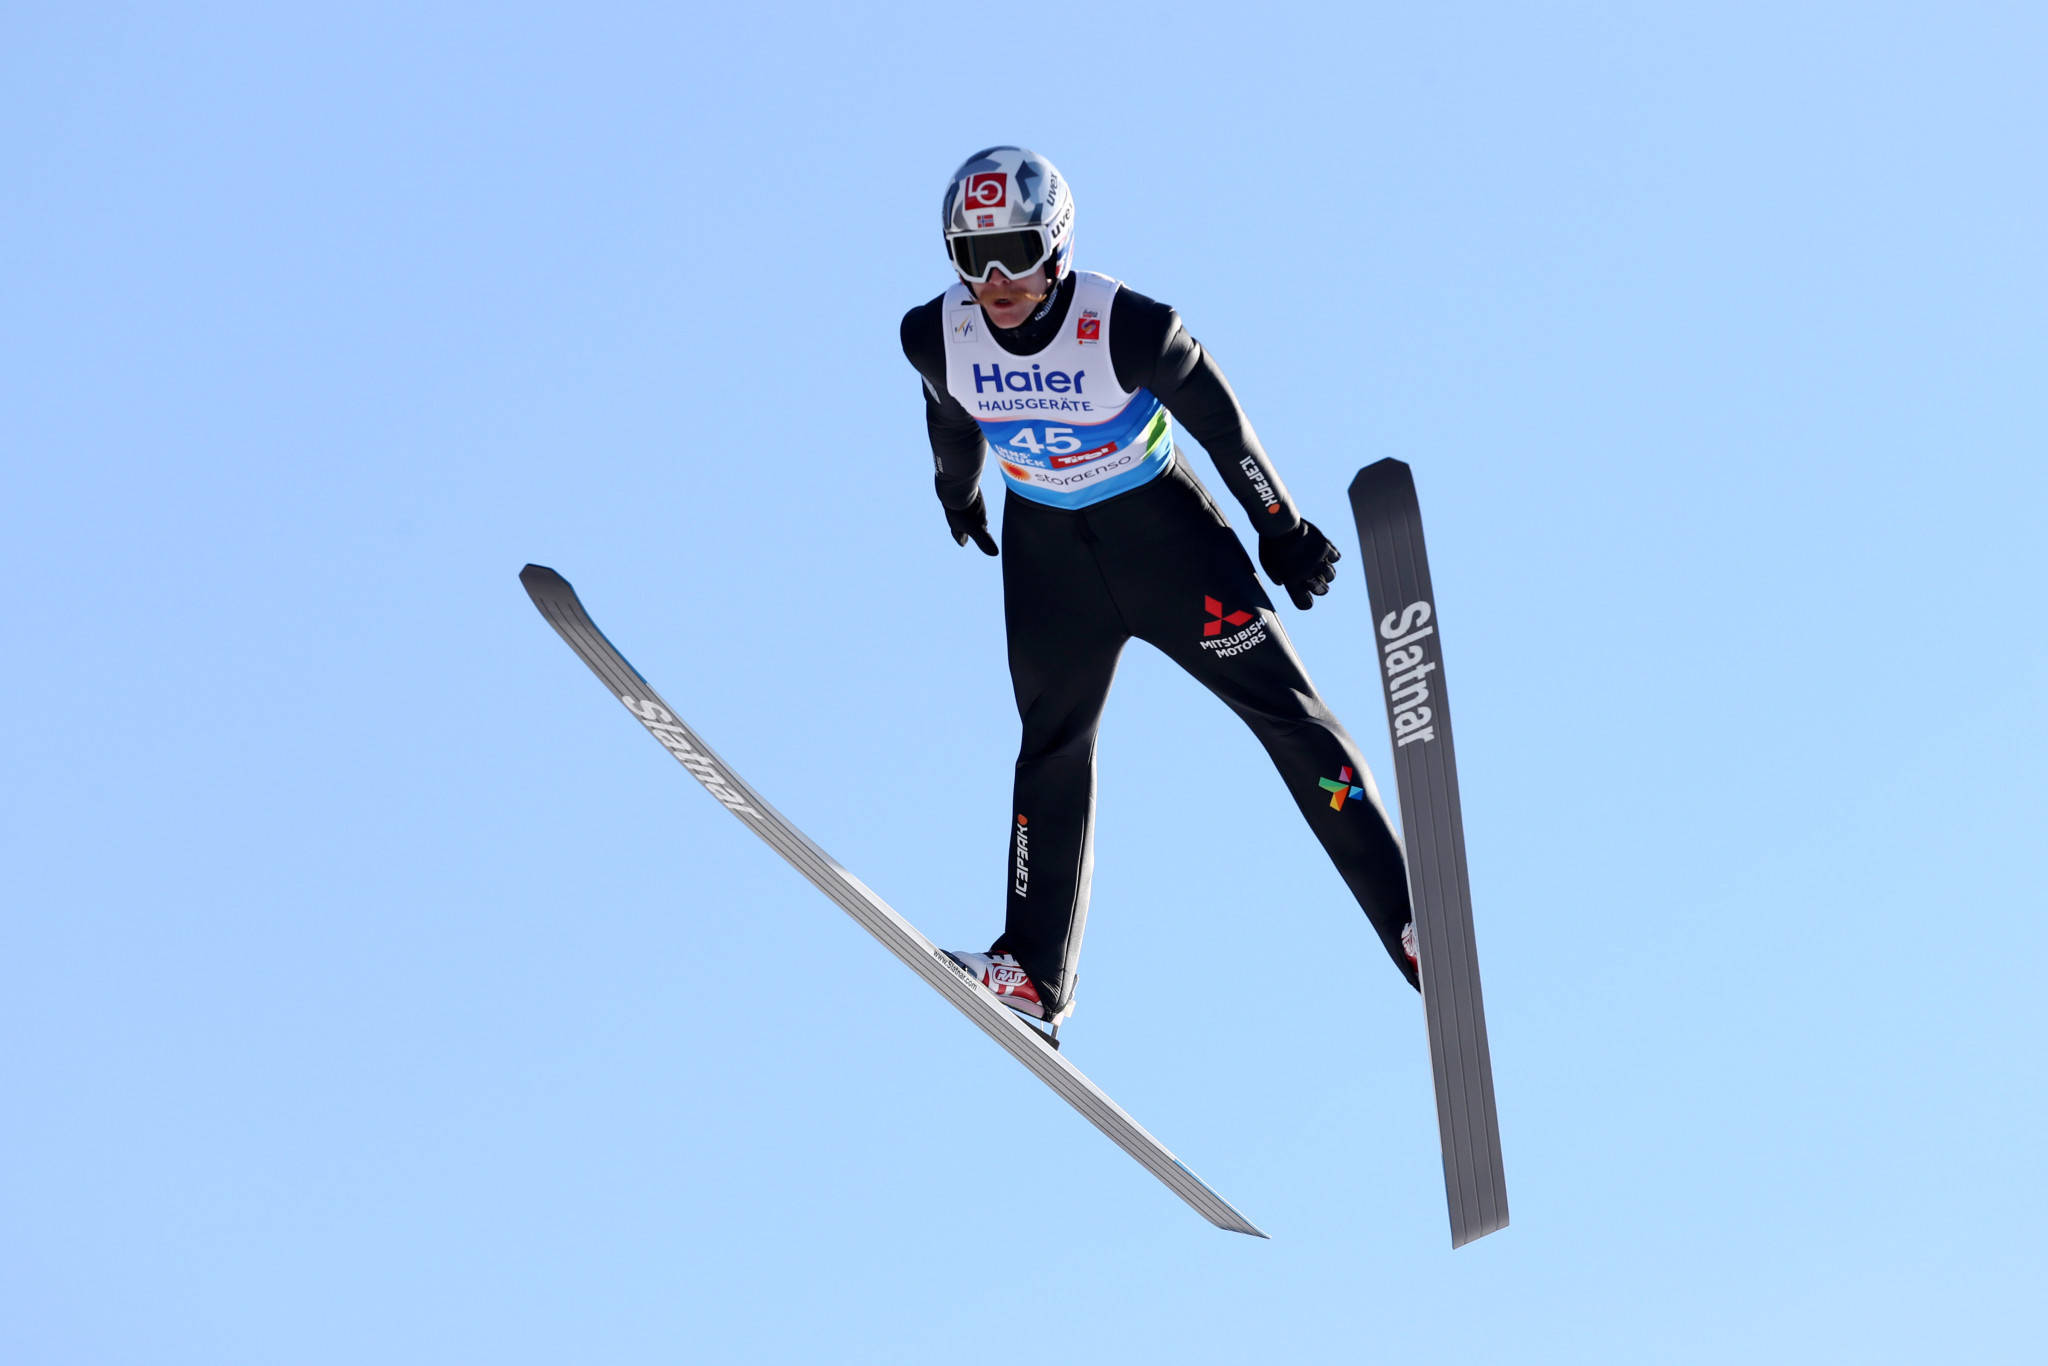 冬奥跳台滑雪冠军图片